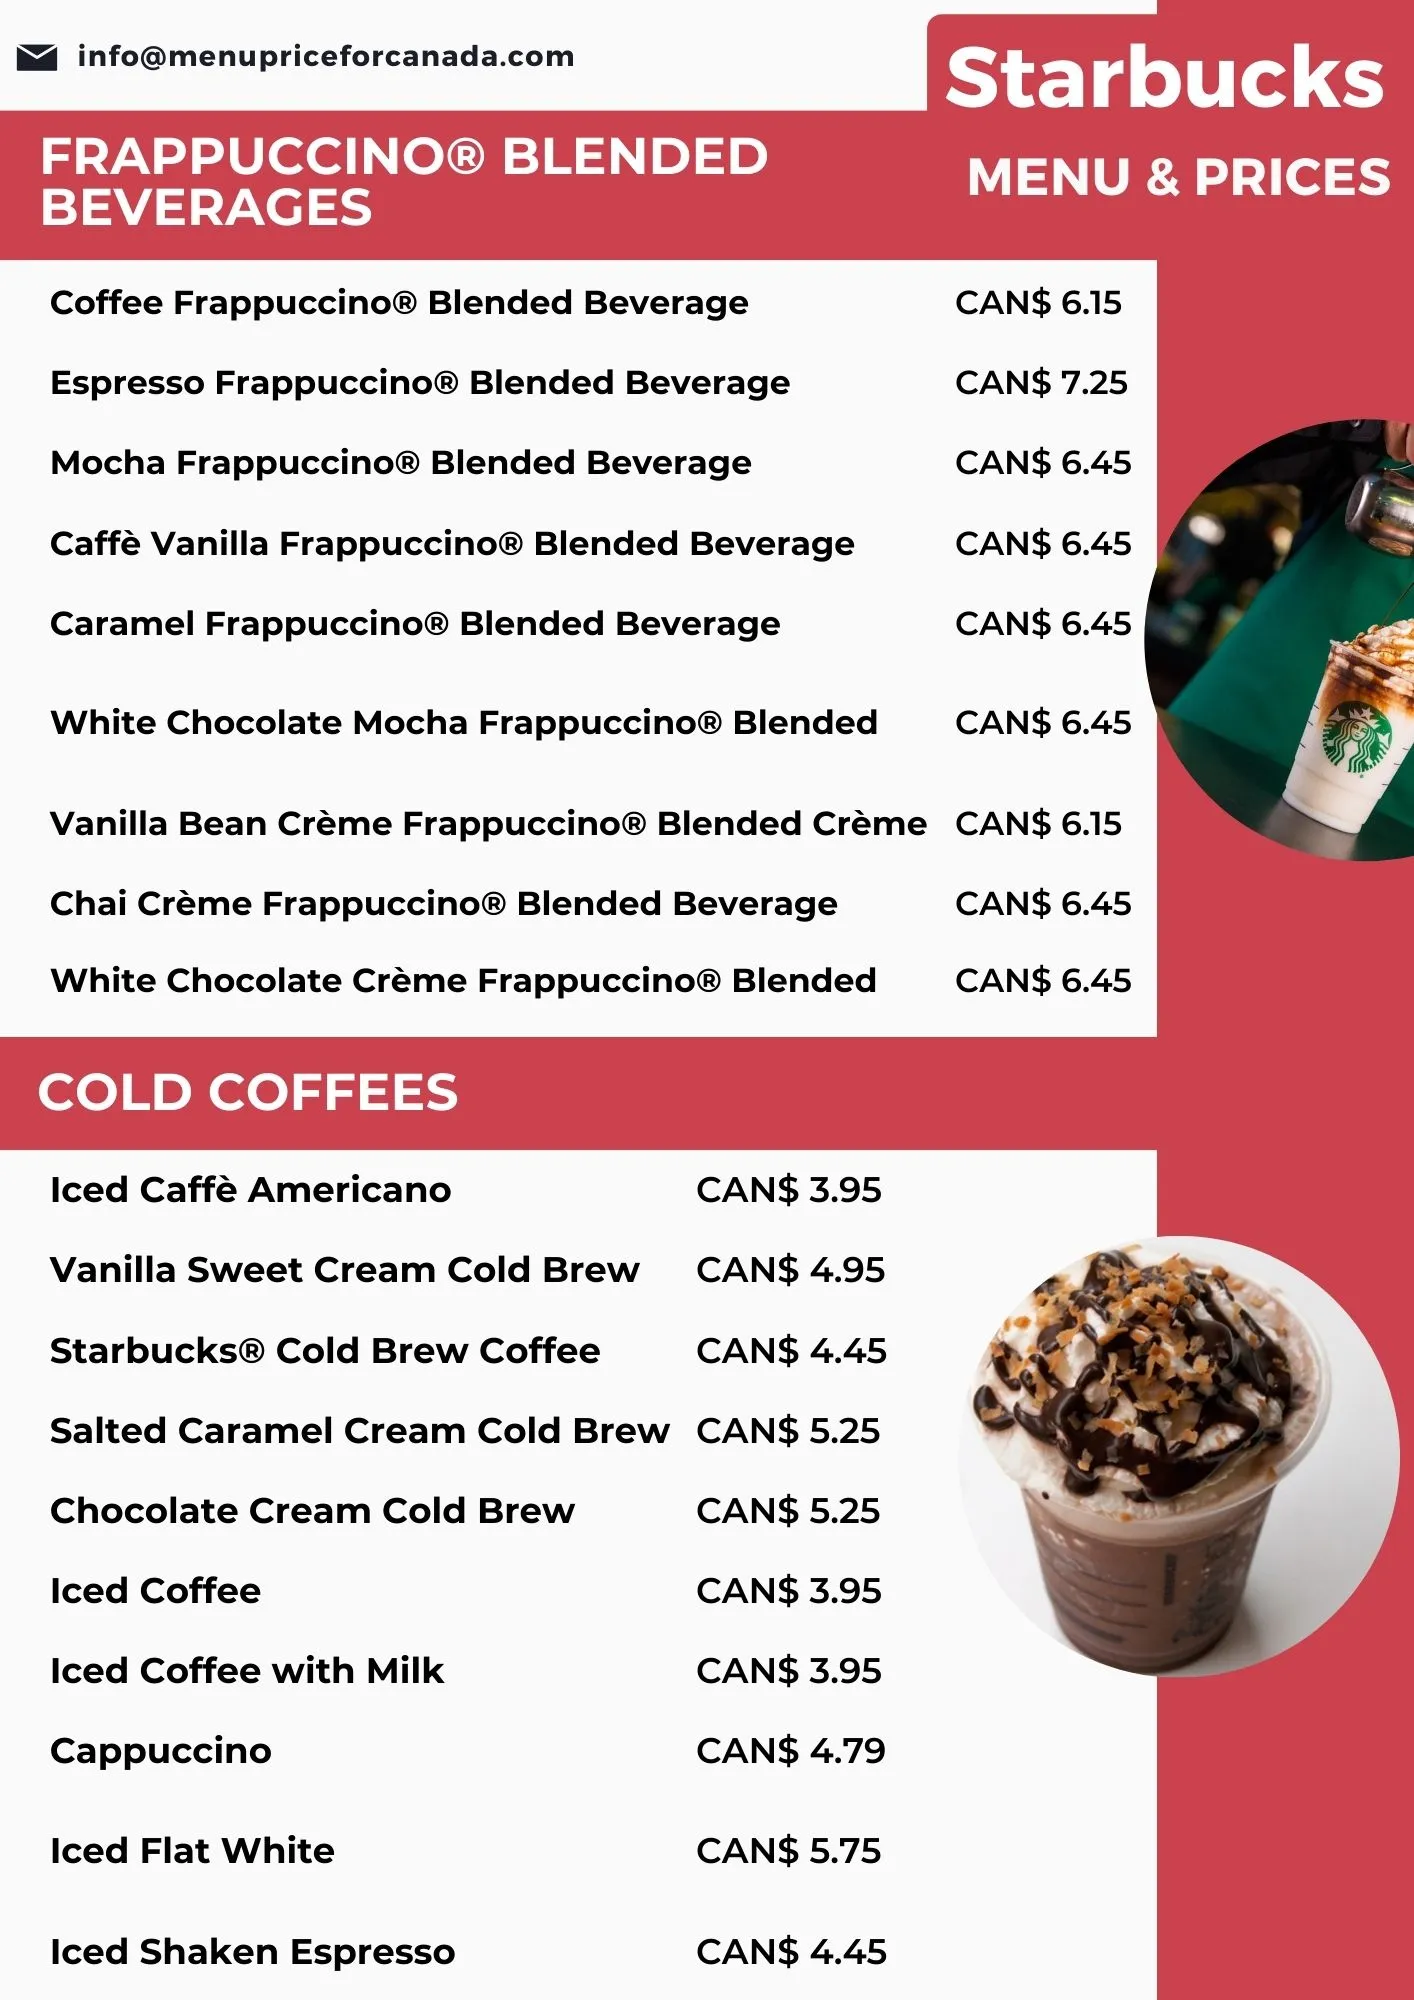 Starbucks menu with prices